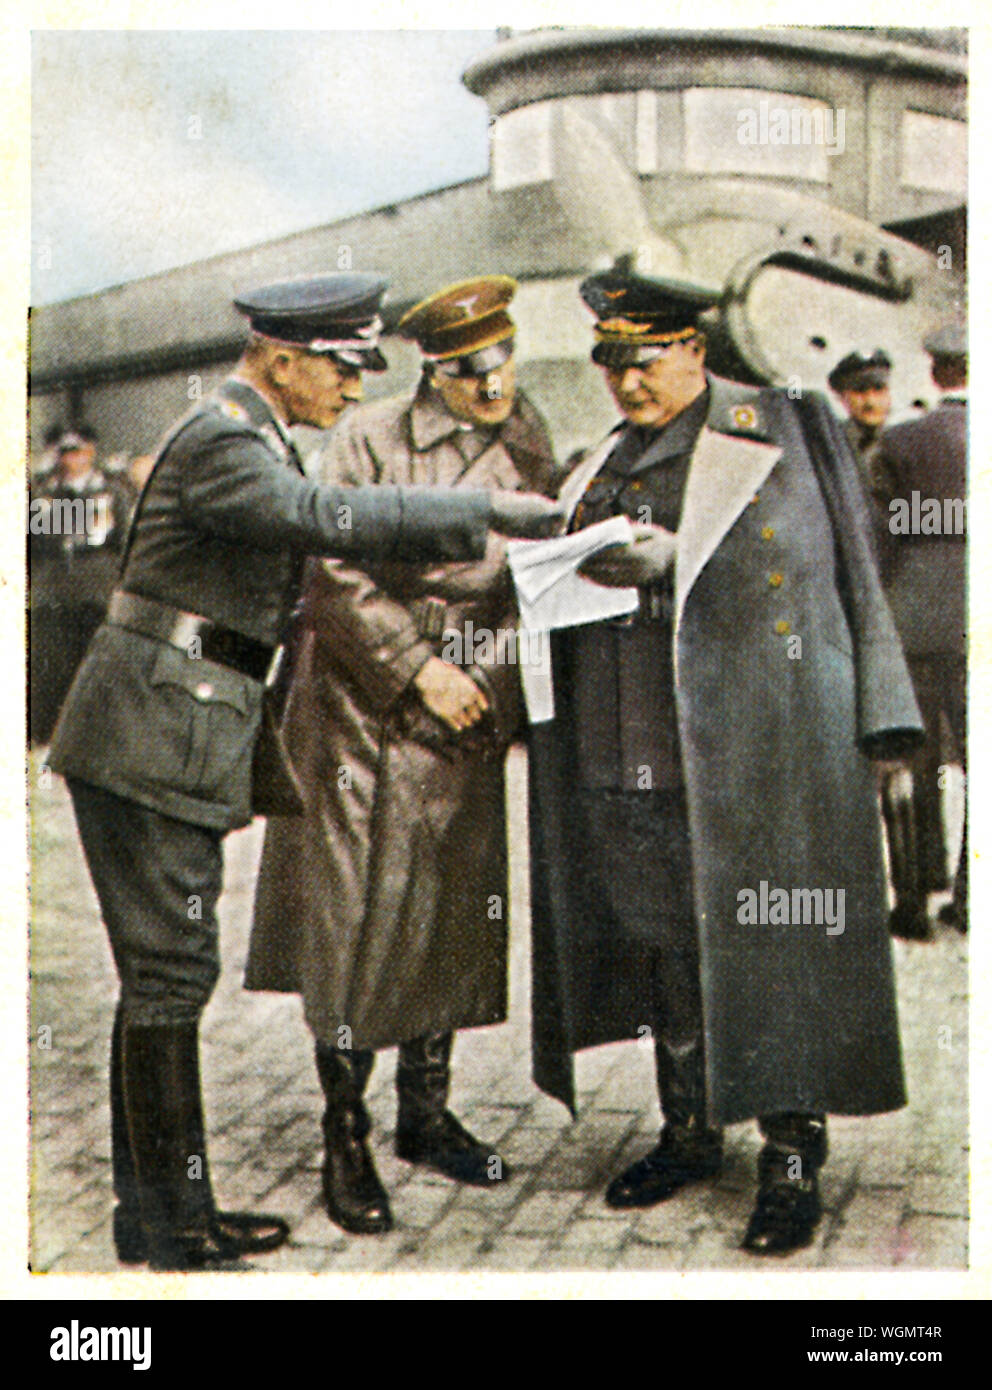 Luftwaffe, Hitler und Göring, 1936 Zigarette Karte des Führers und Reichsmarshall Herman Göring bei einer Demonstration der Deutschen Luftwaffe Stockfoto